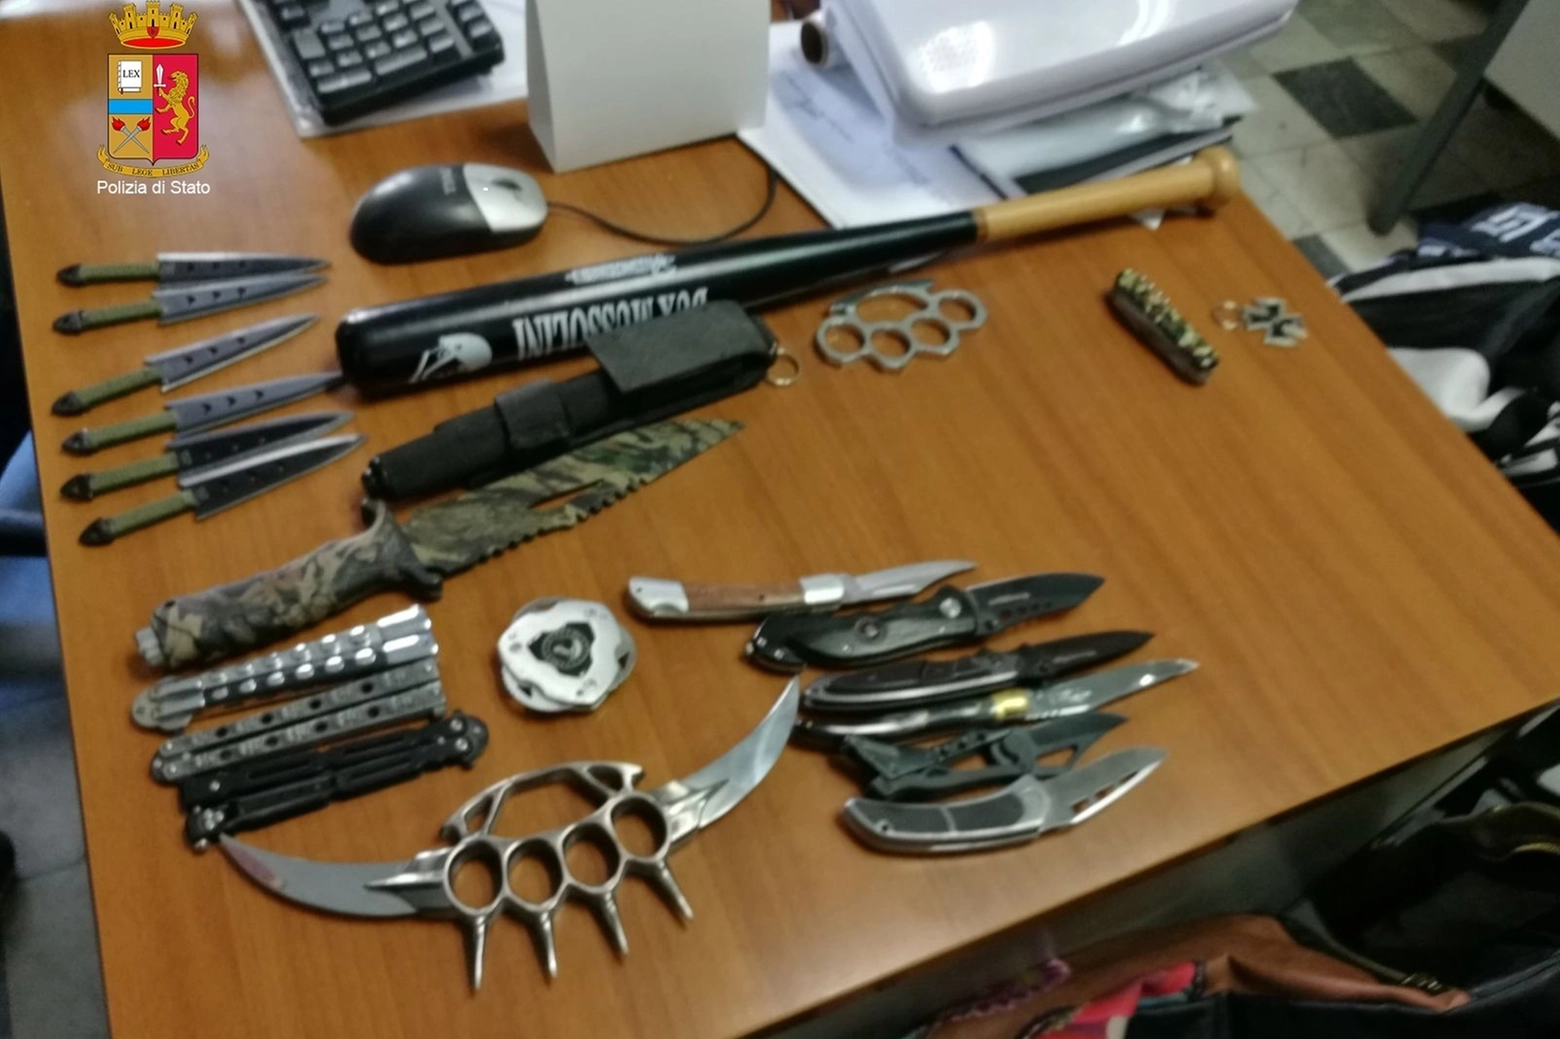 Tirapugni, sfollagente, pugnali e coltelli sequestrati dalla Polizia